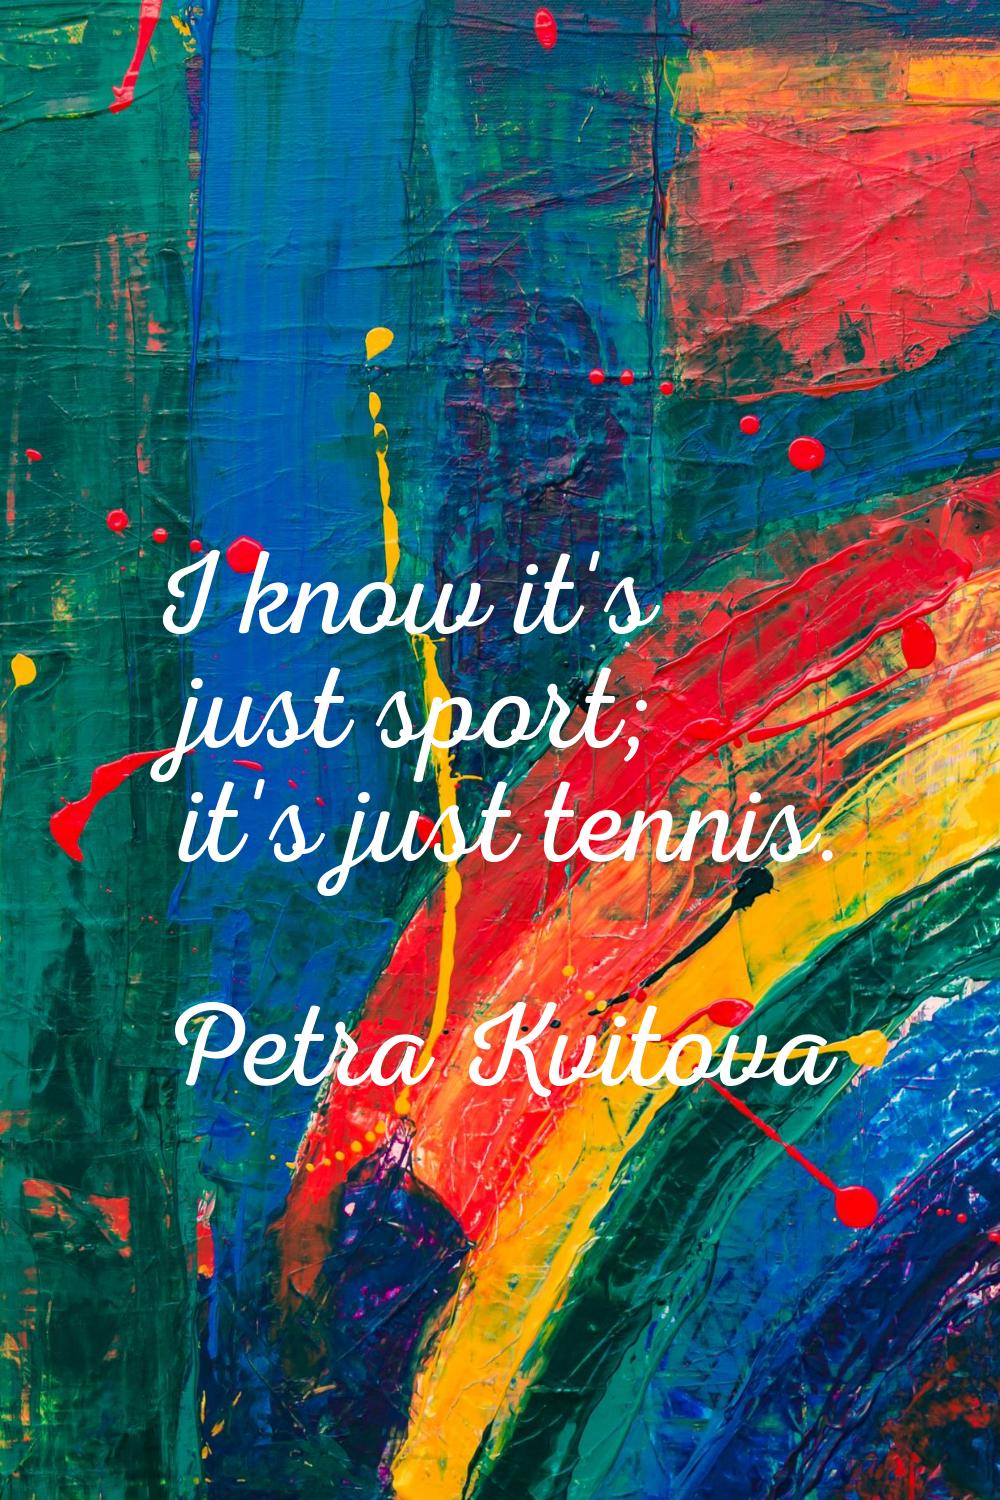 I know it's just sport; it's just tennis.